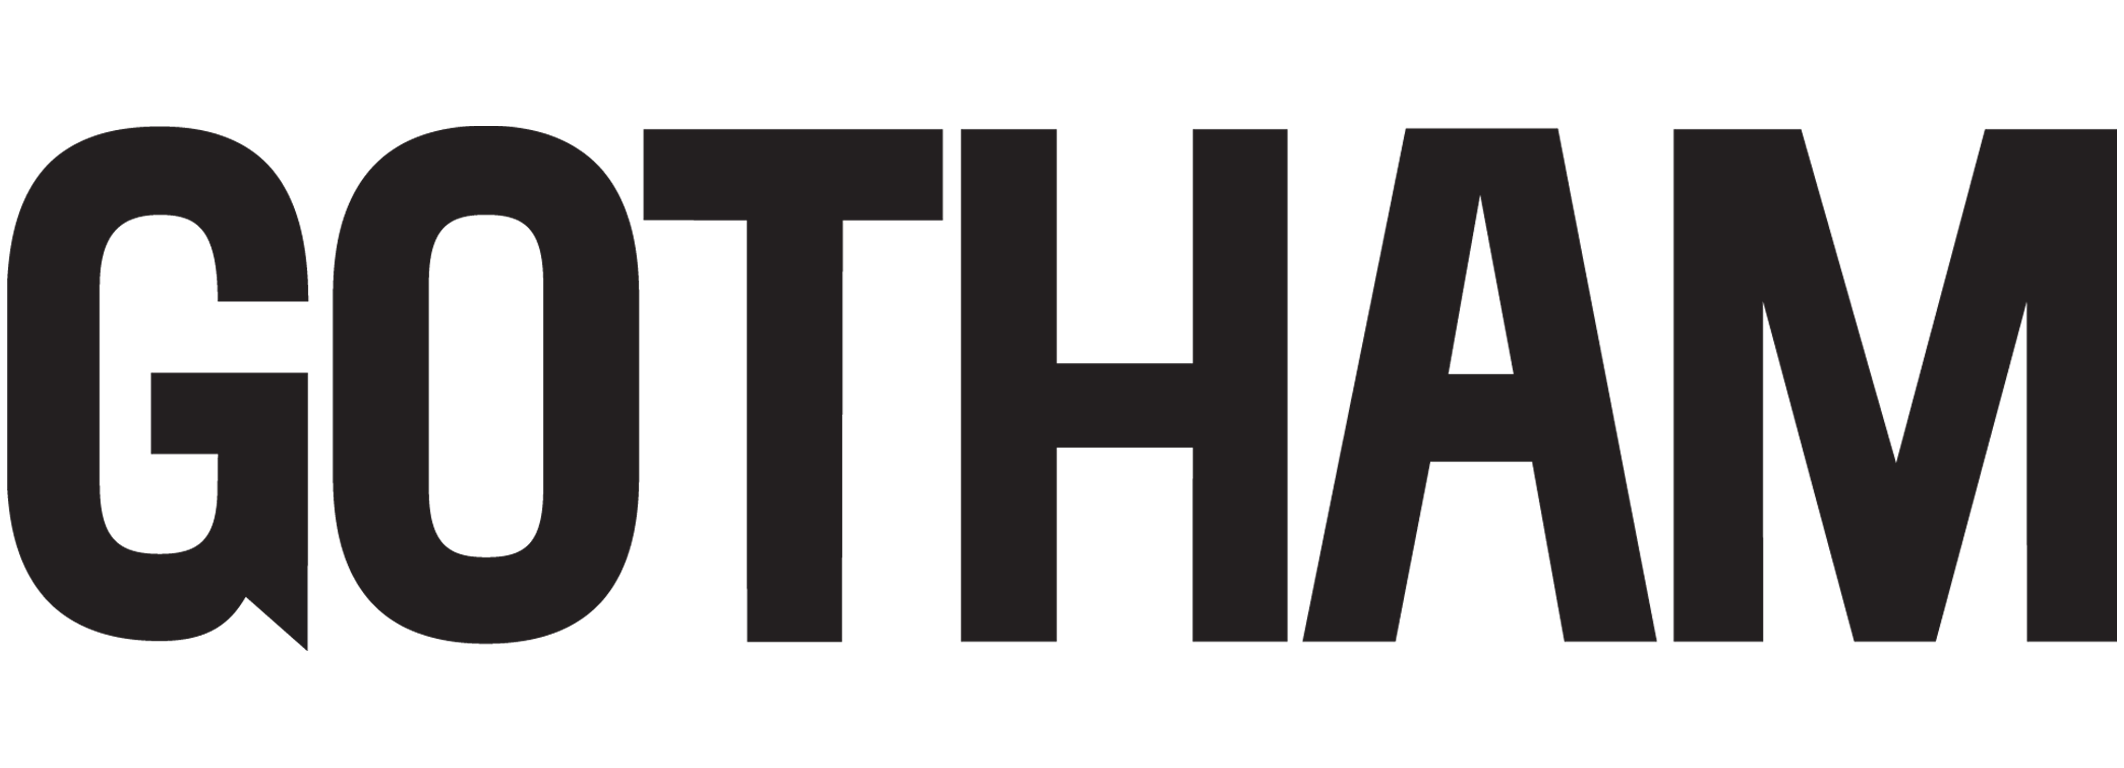 gotham magazine logo